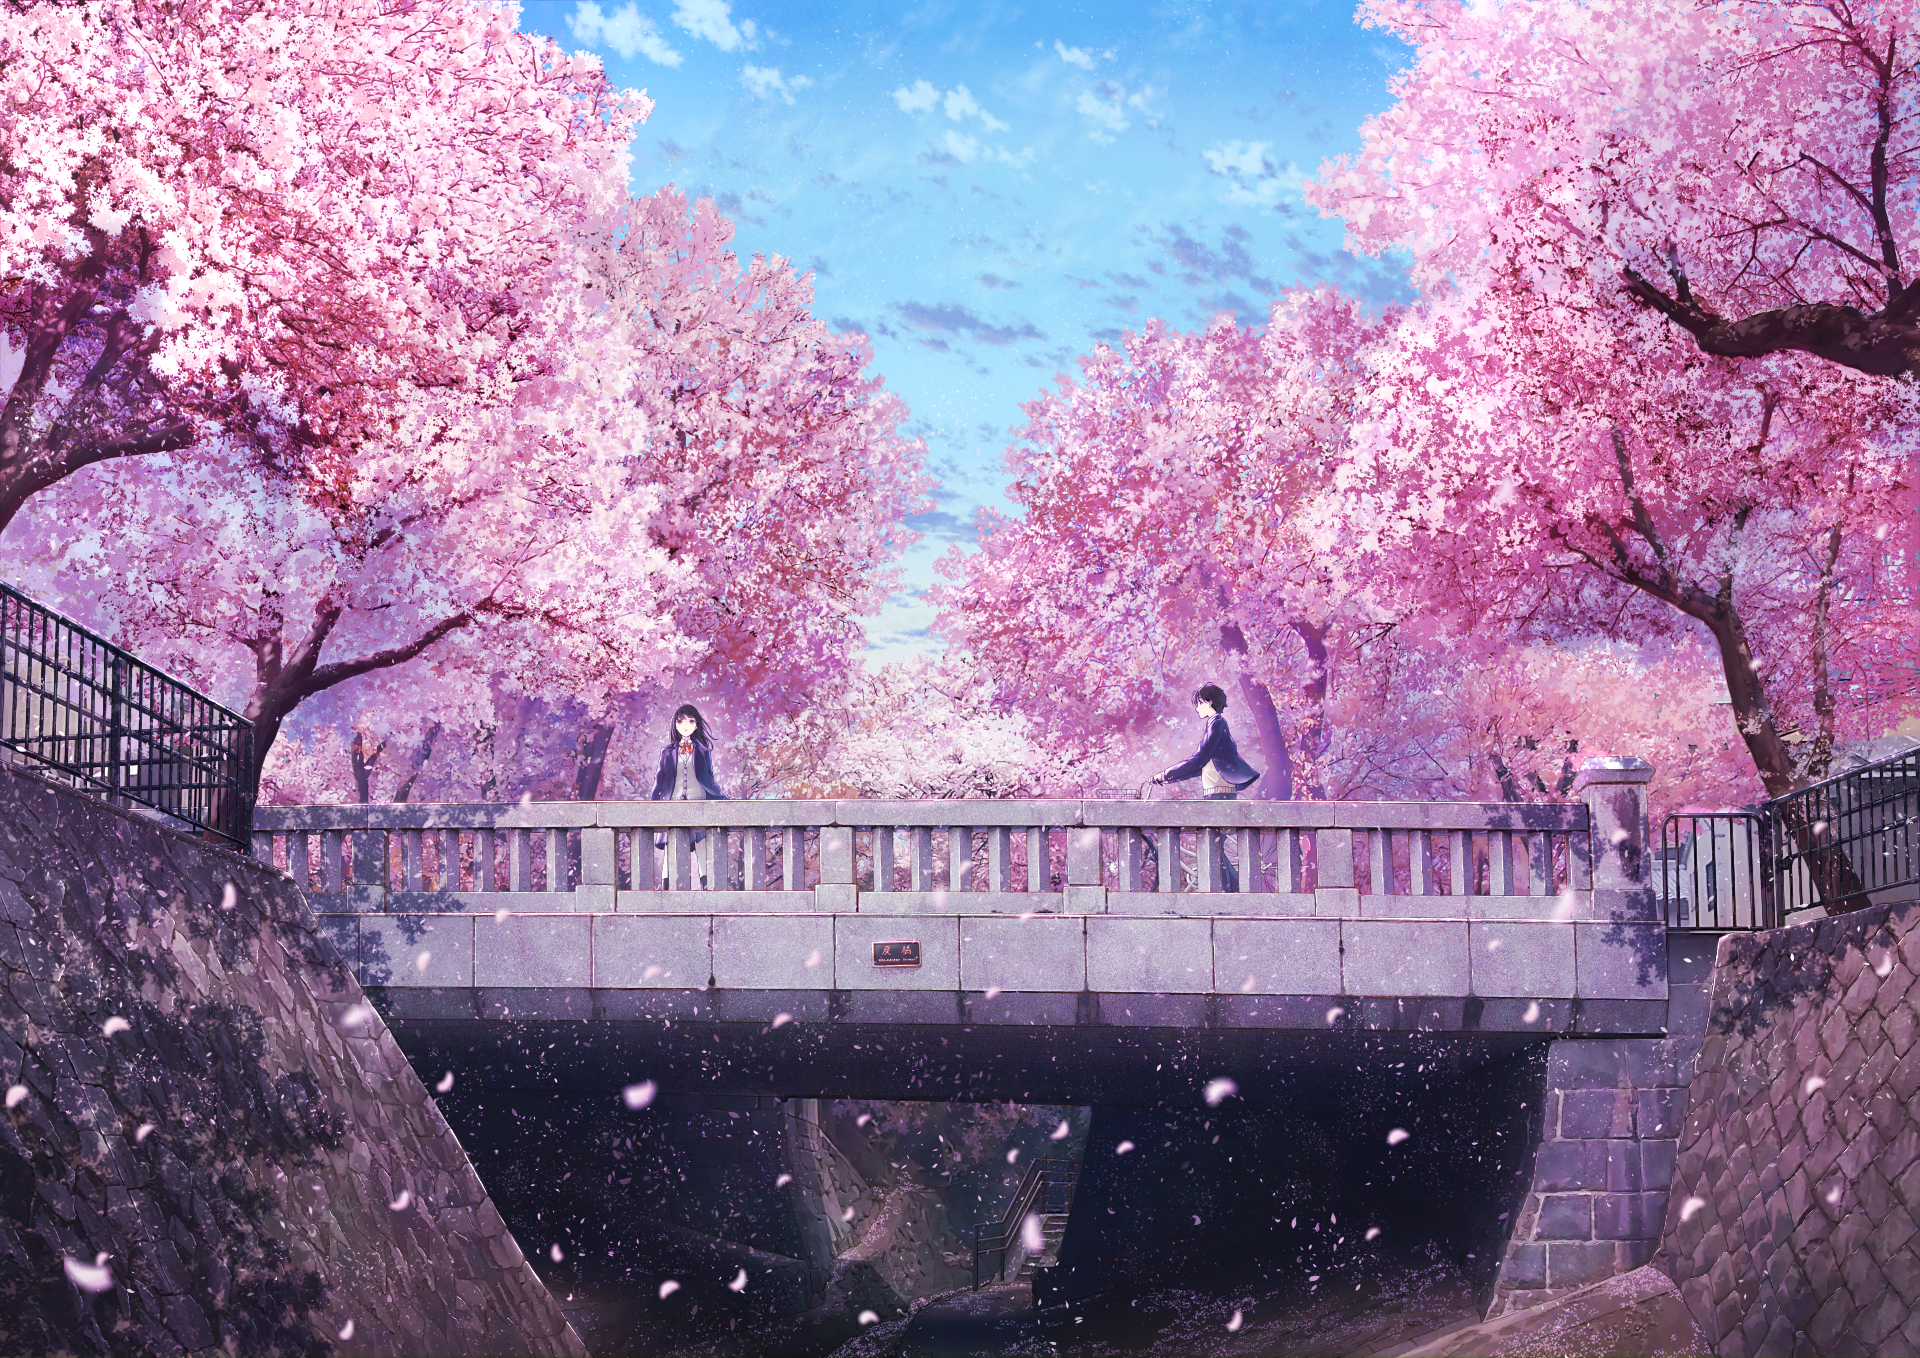 sakura trees anime backround